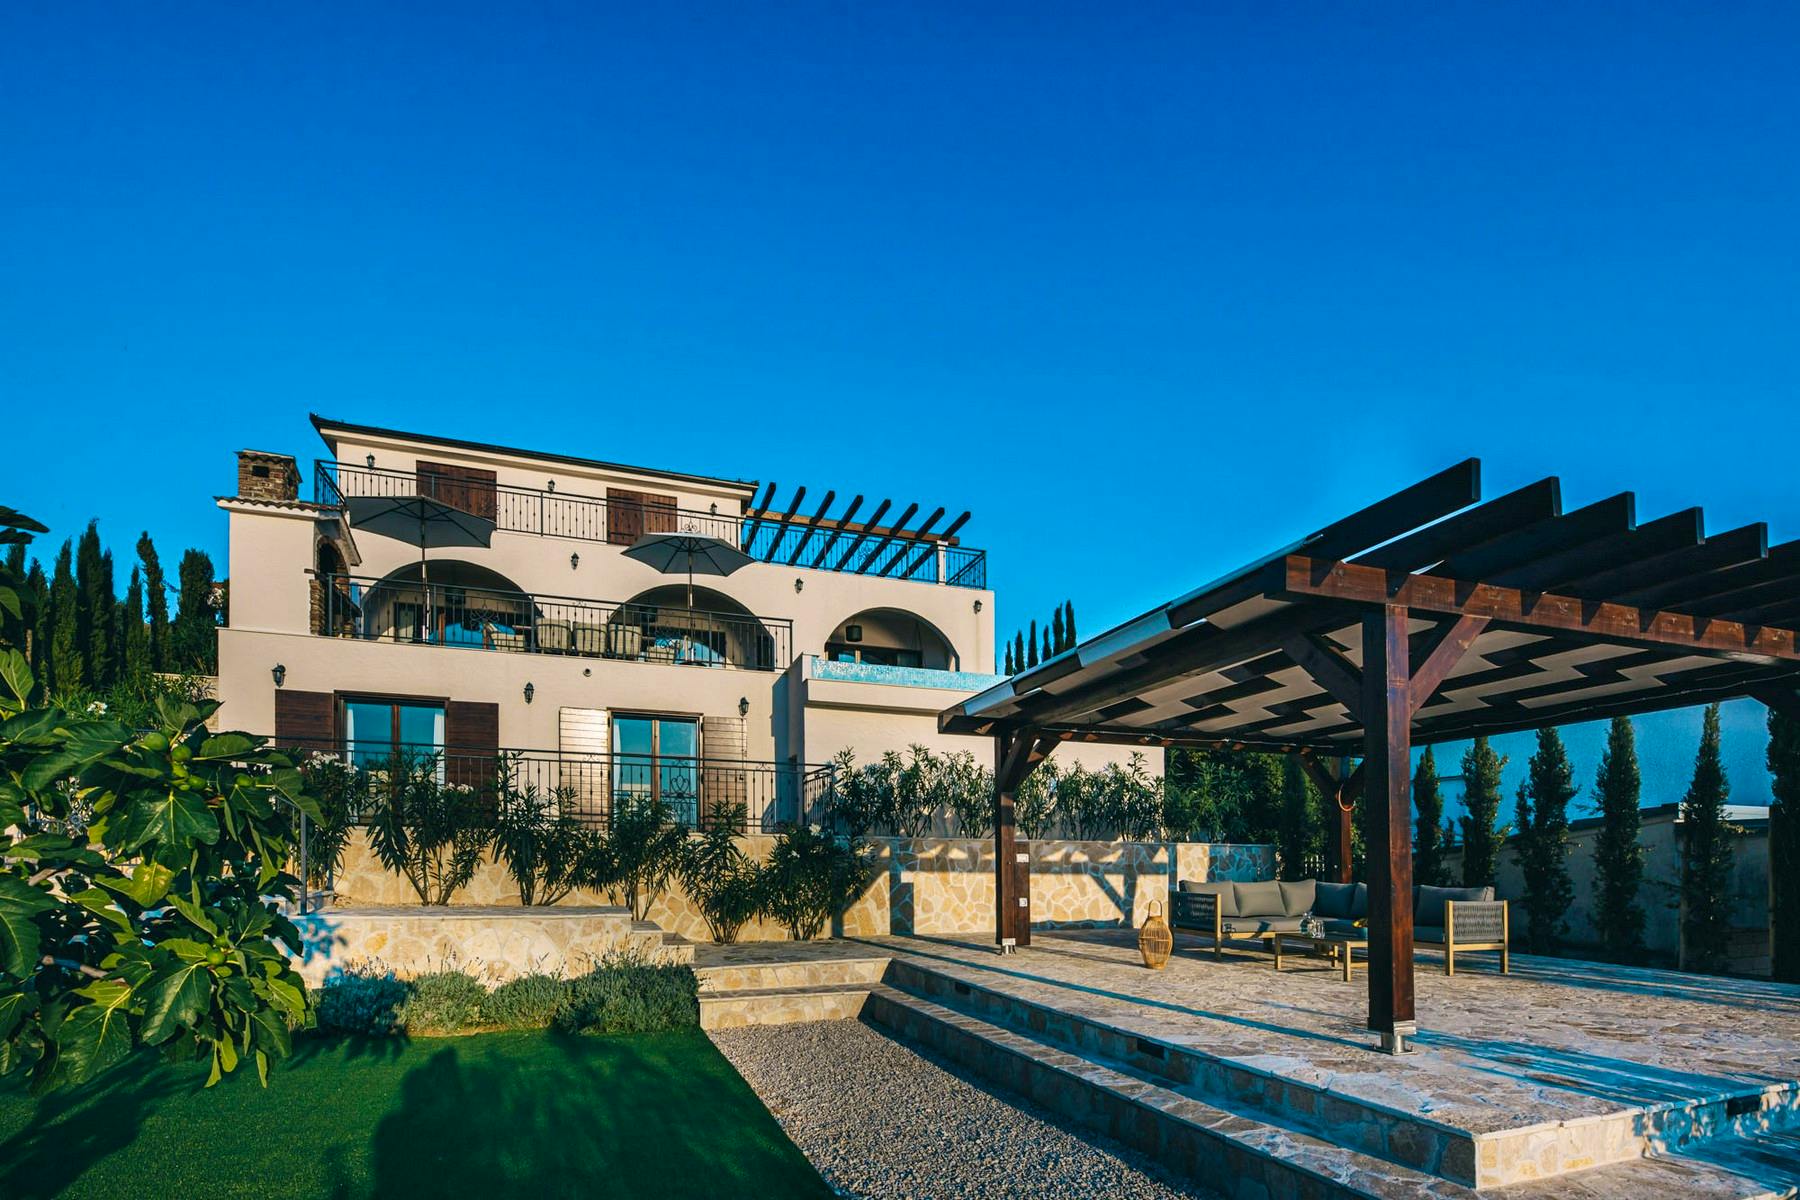 Villa with Mediterranean garden and luxury amenities